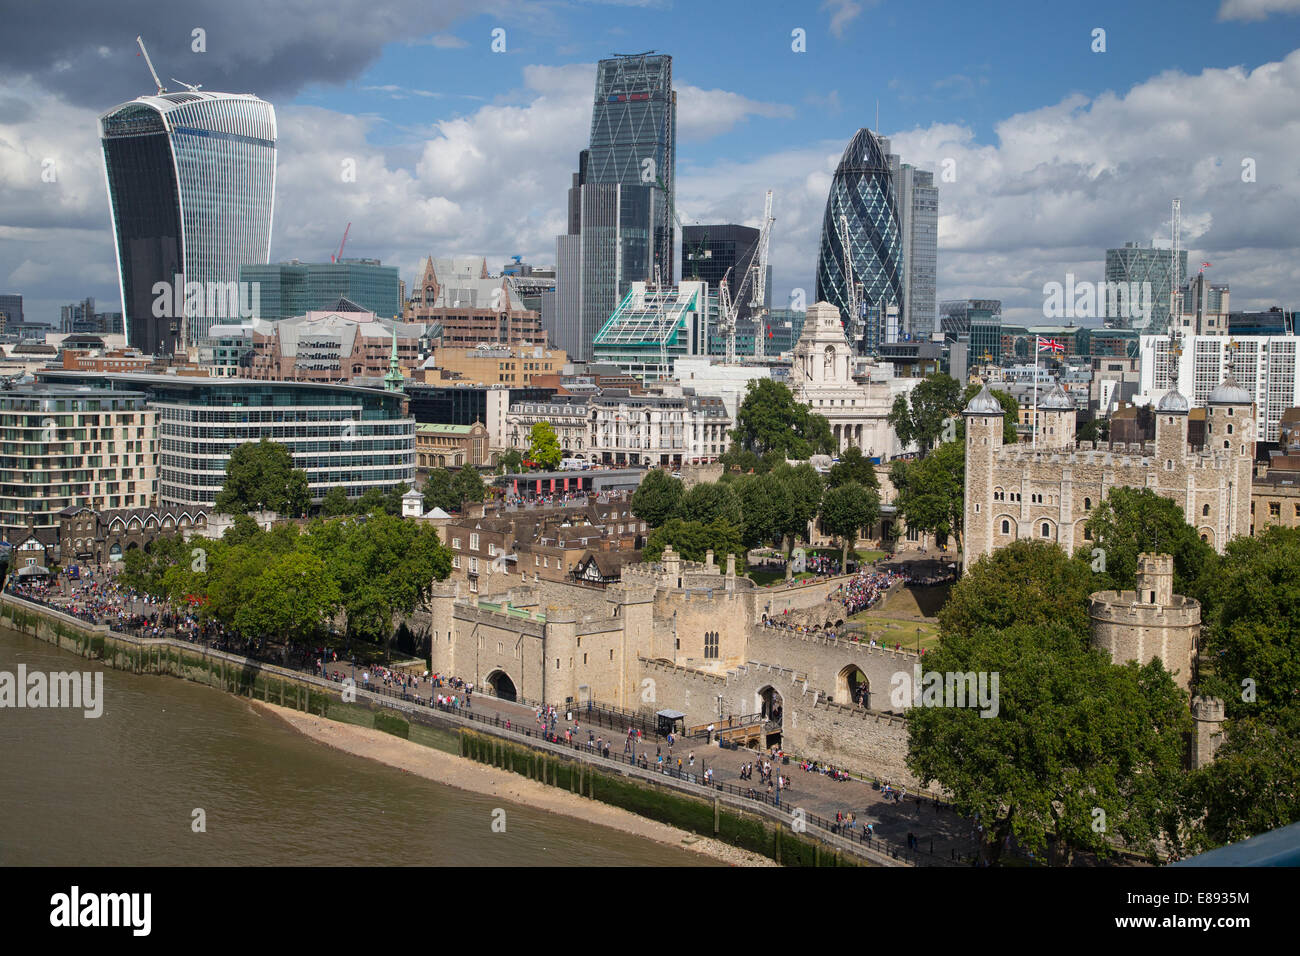 La città di Londra che mostra la torre 42,il cetriolino e il Cheesegrater Foto Stock